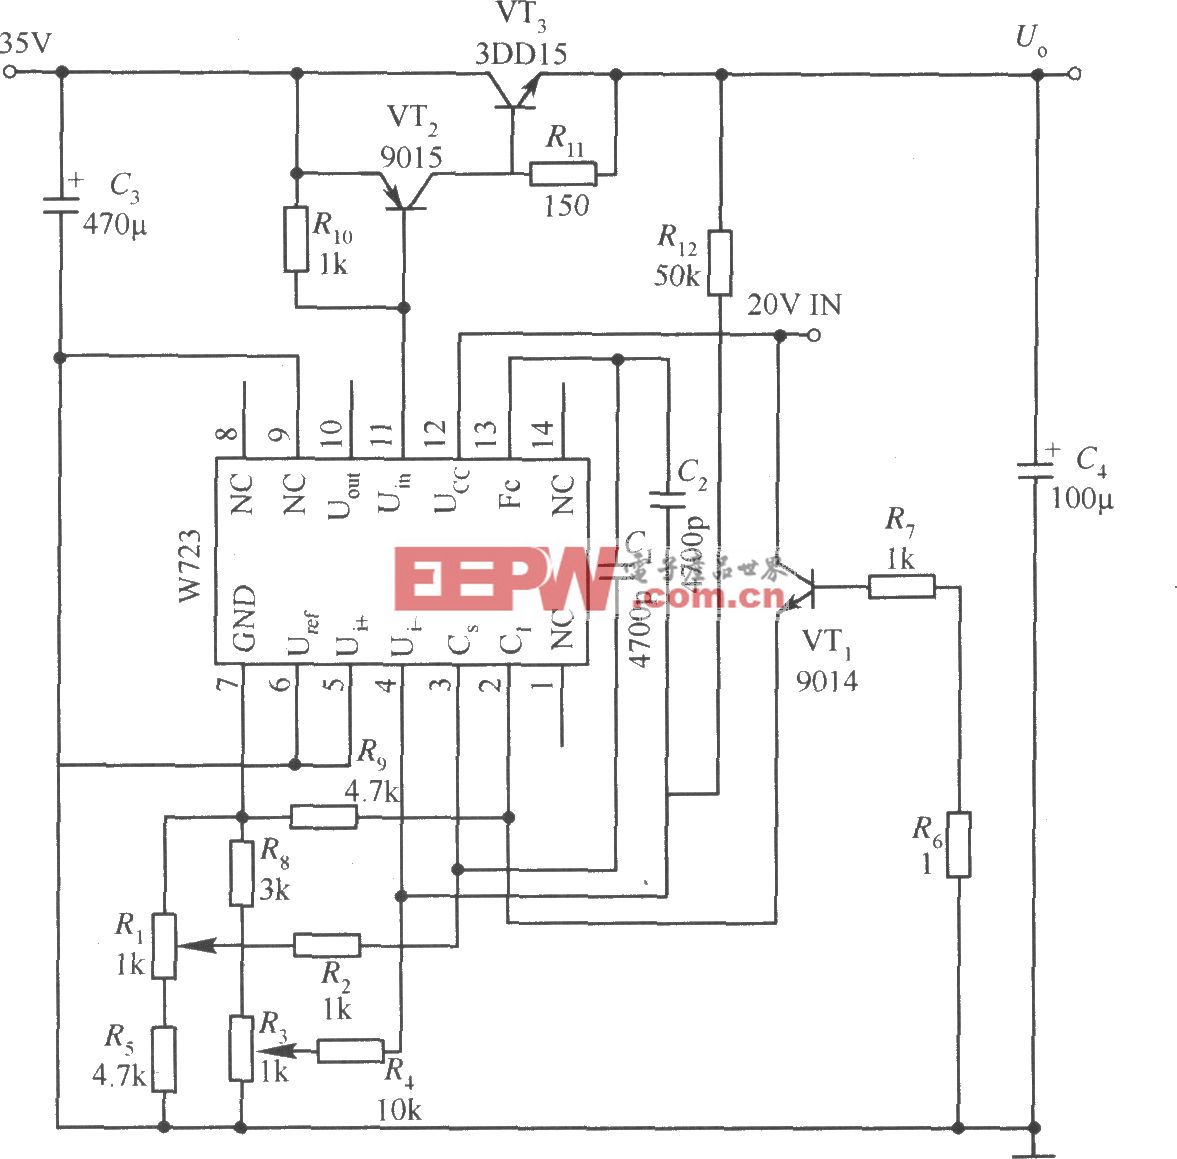 W723构成的输出电压和电流均可调的应用电路